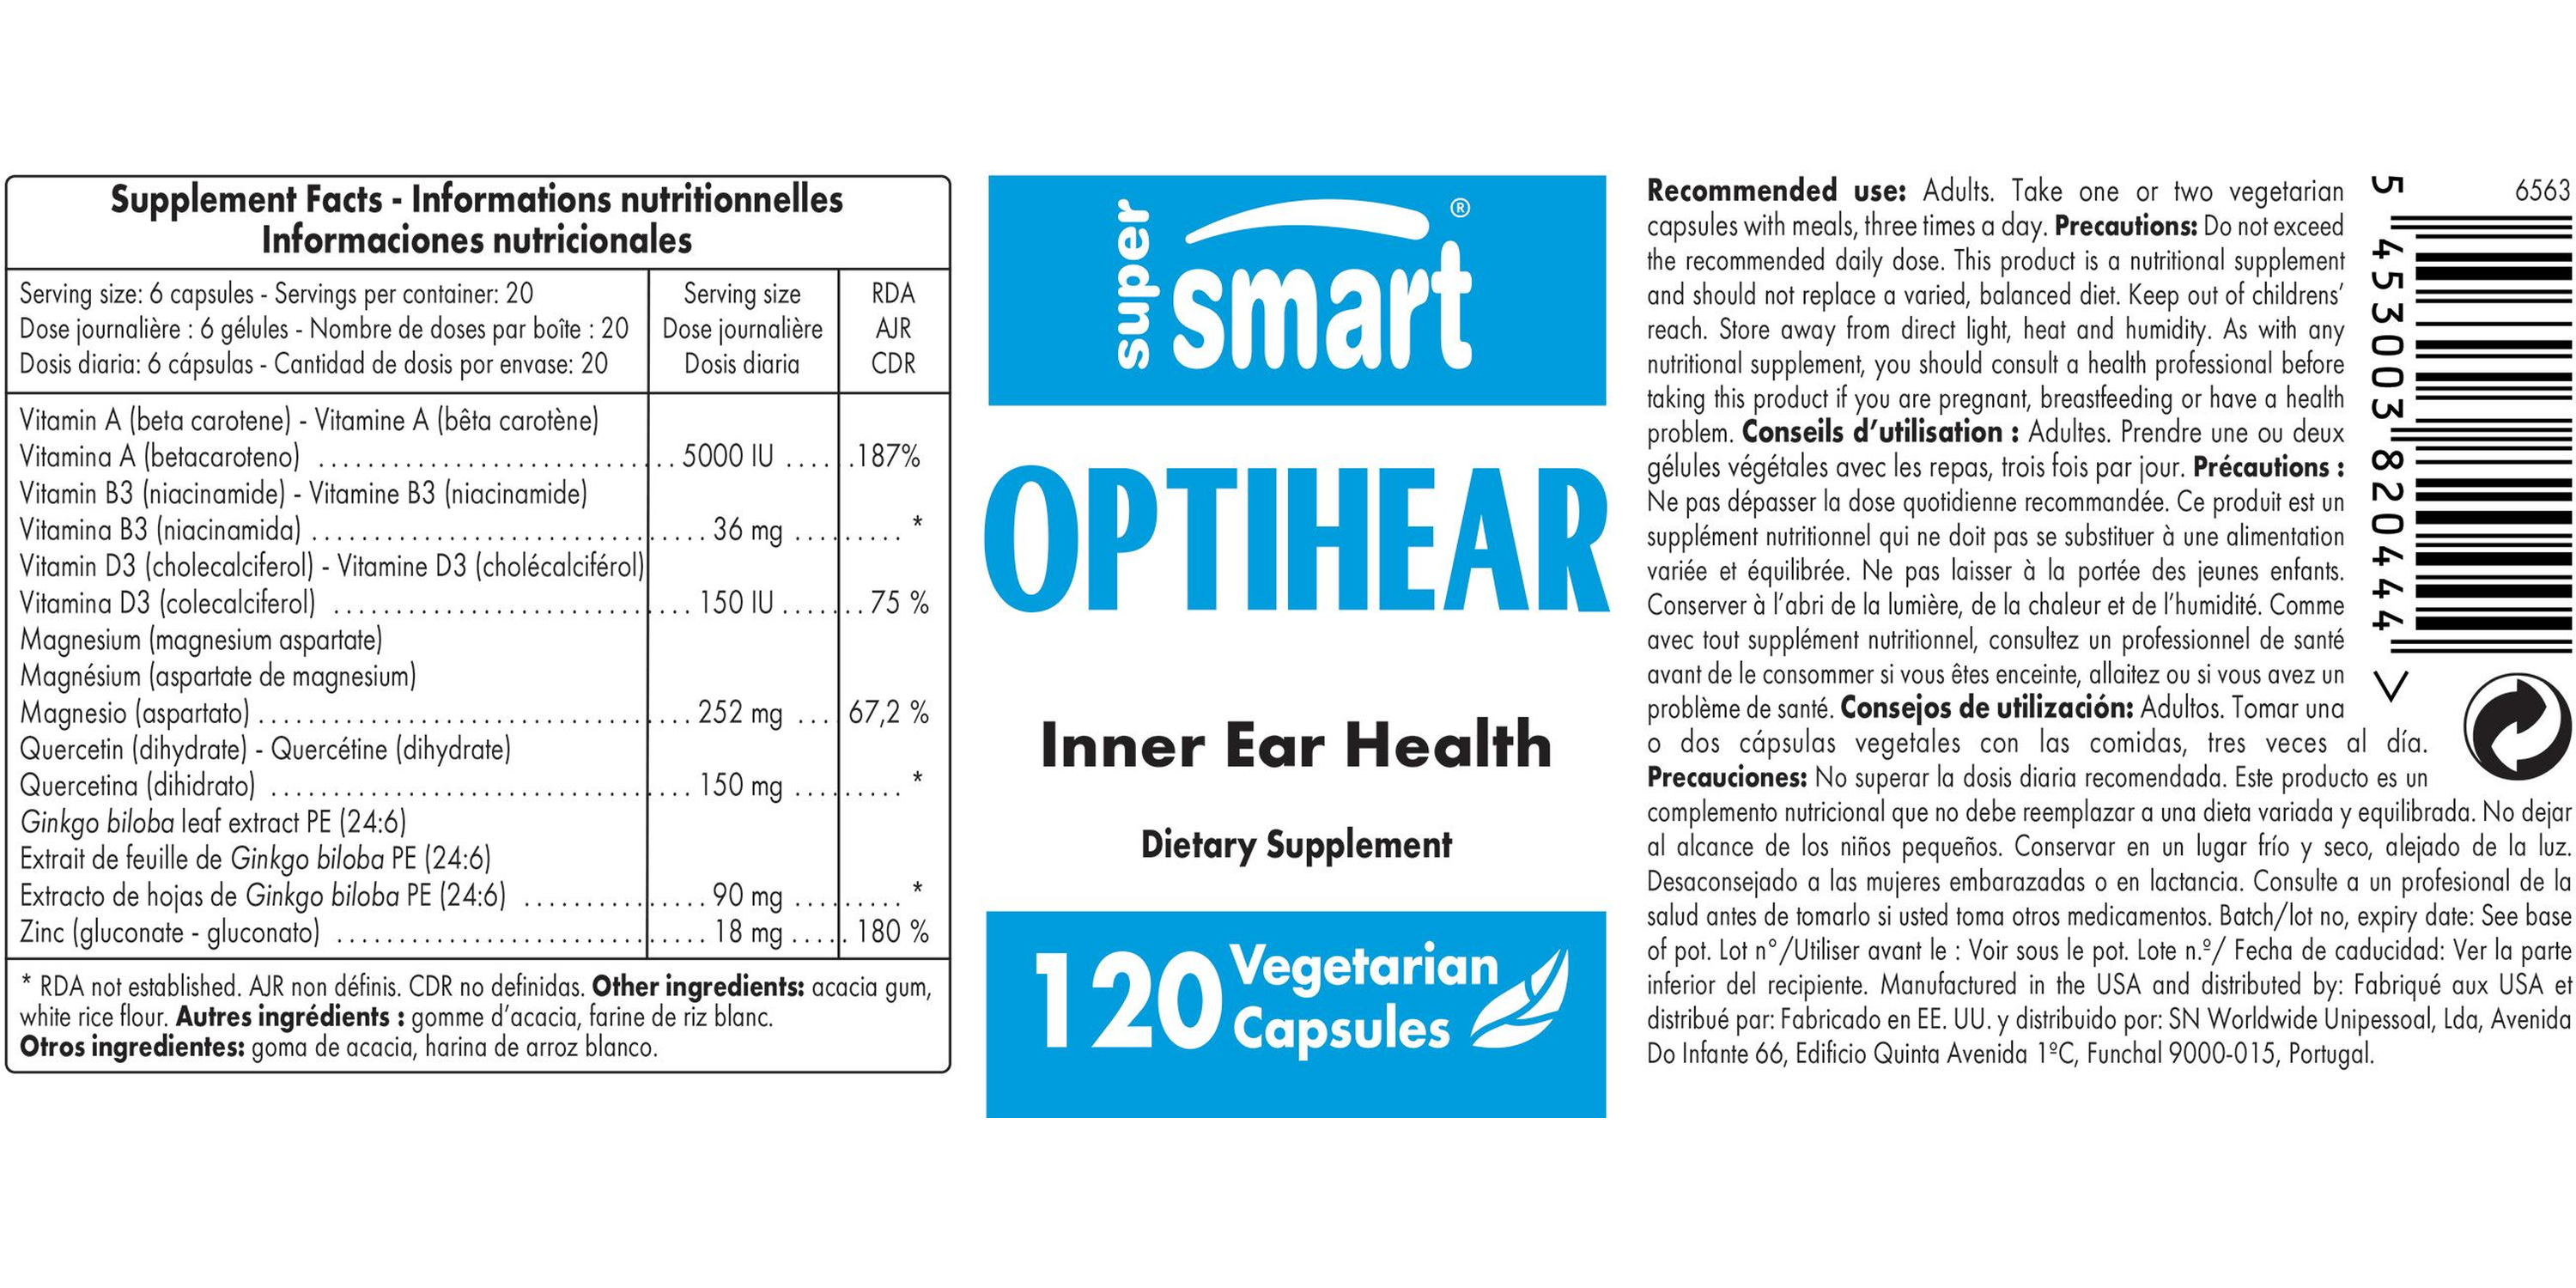 OptiHear™ Supplement